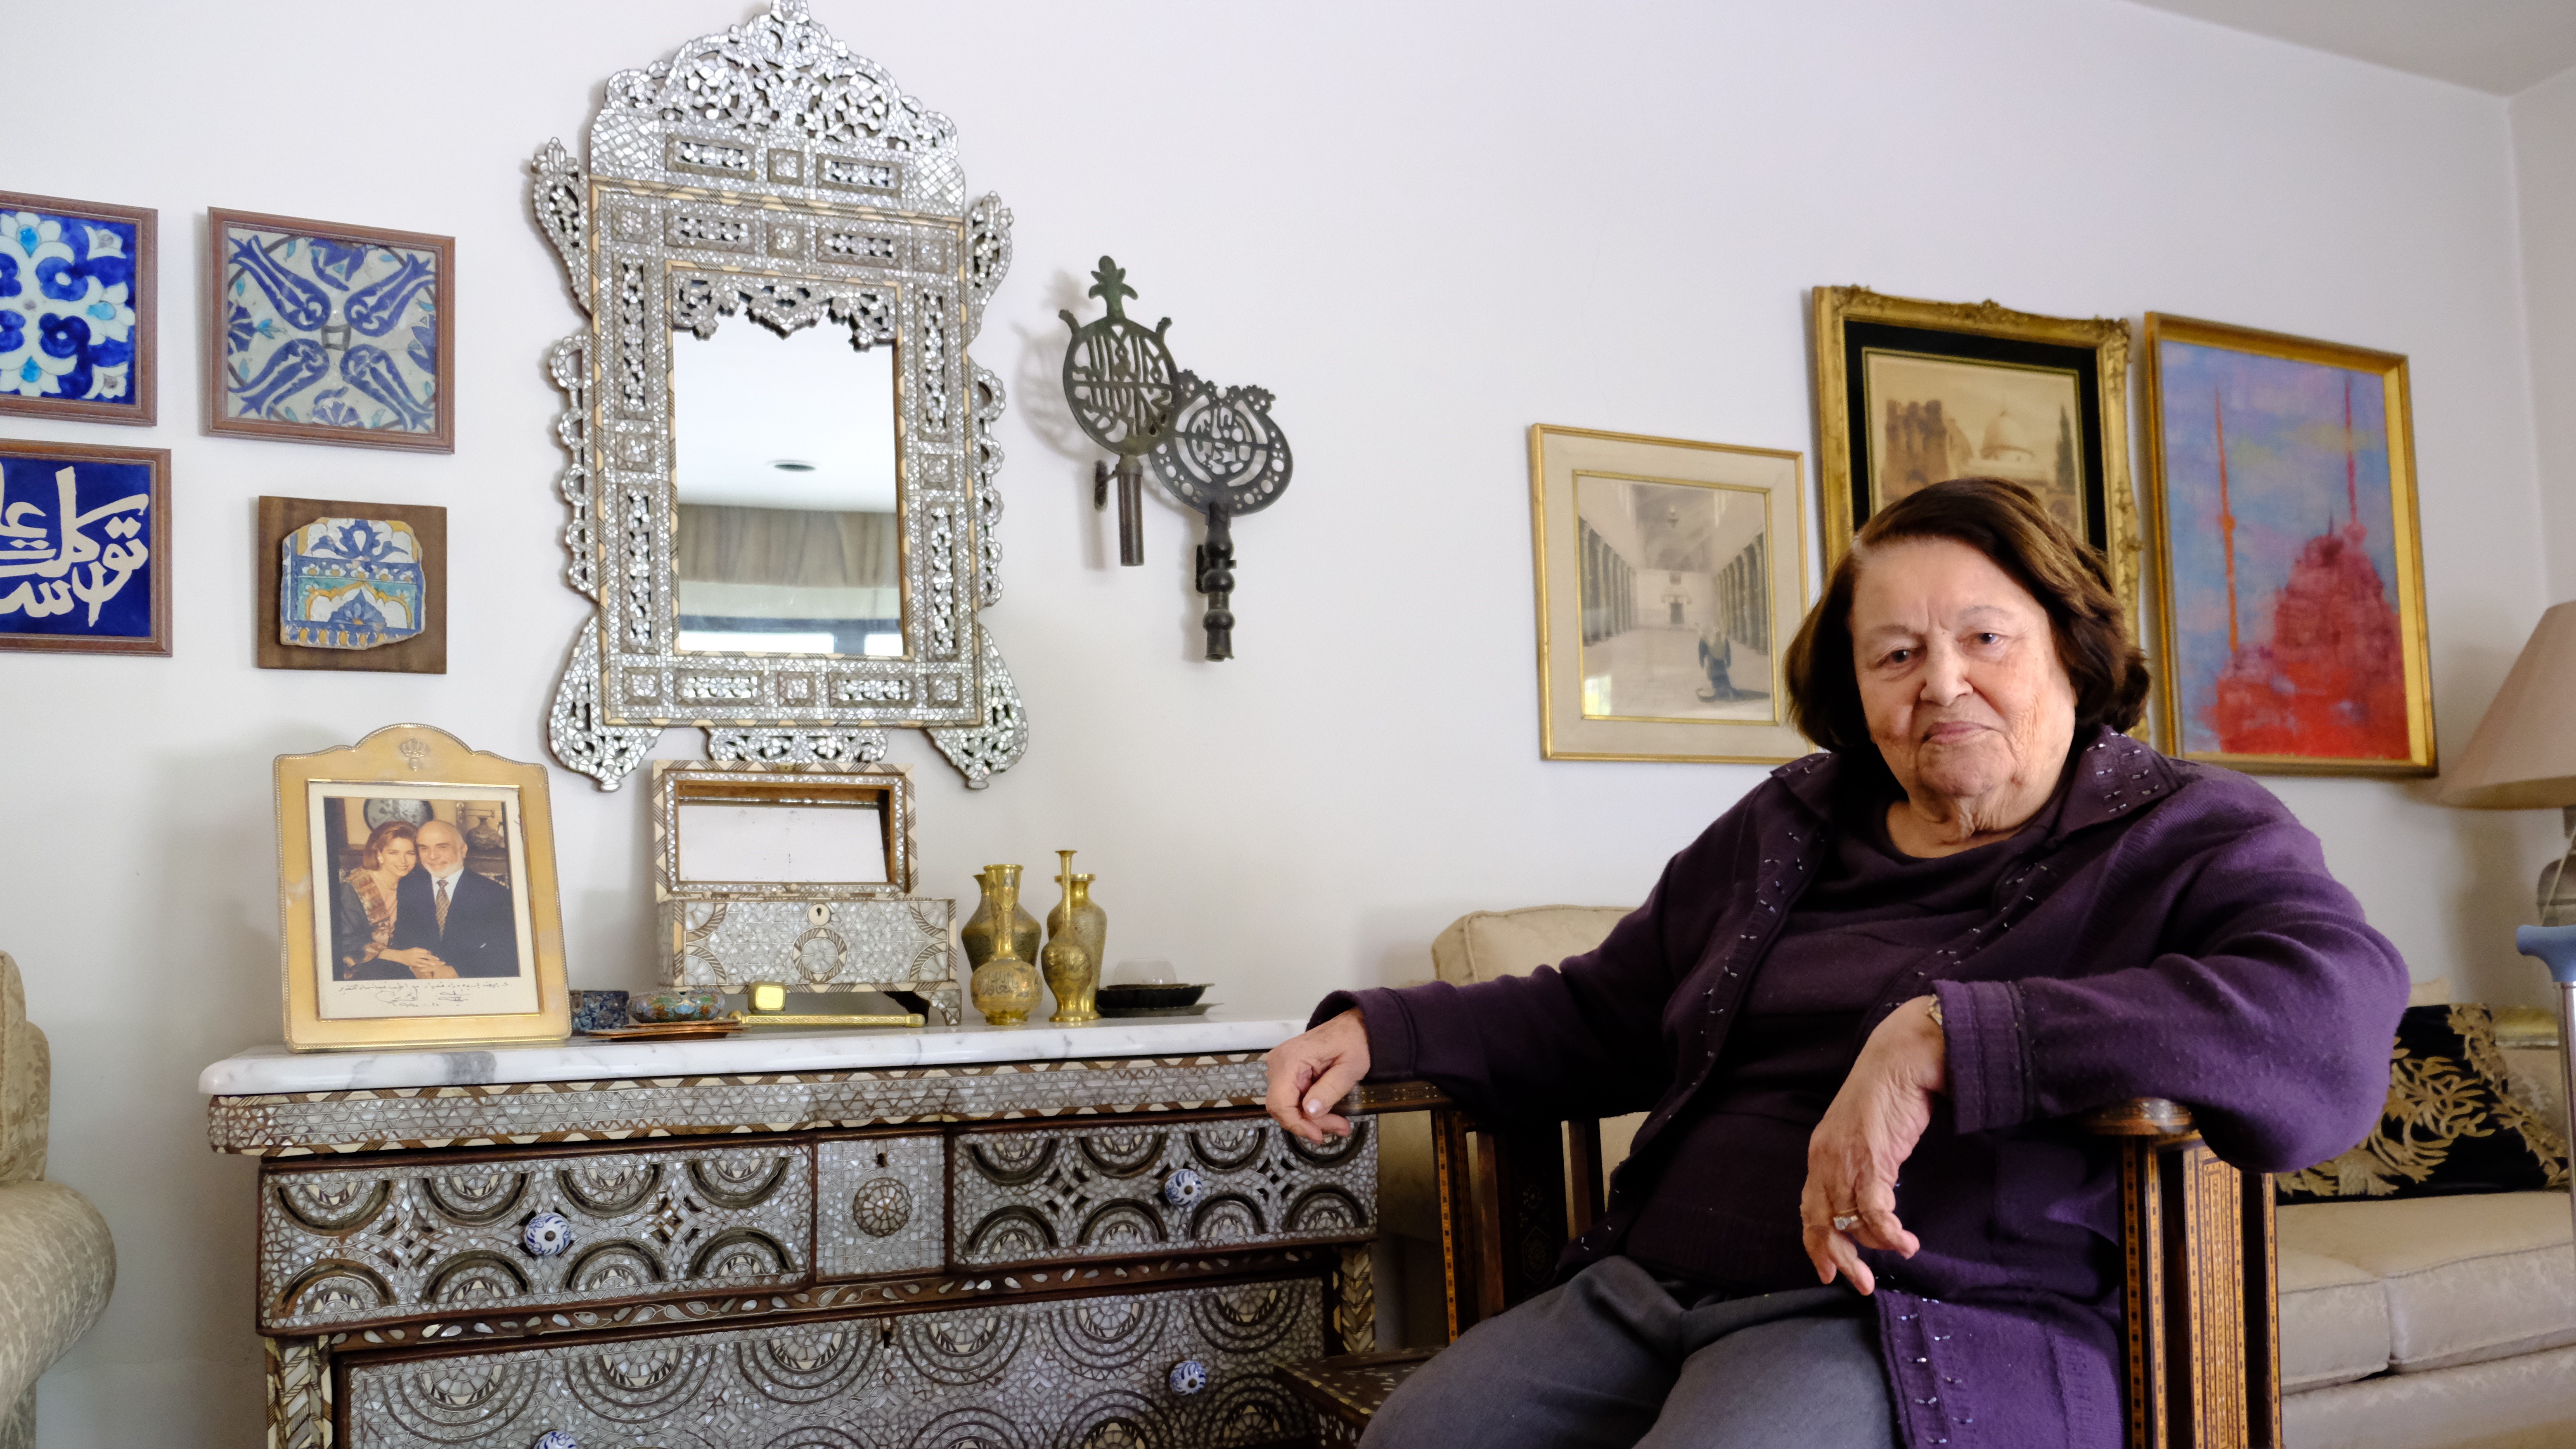 الفلسطينية وداد قعوار - كرست نفسها لنشر الوعي بقيمة الأزياء الفلسطينية والأردنية والسورية وأسست متحف "طِراز" في الأردن.